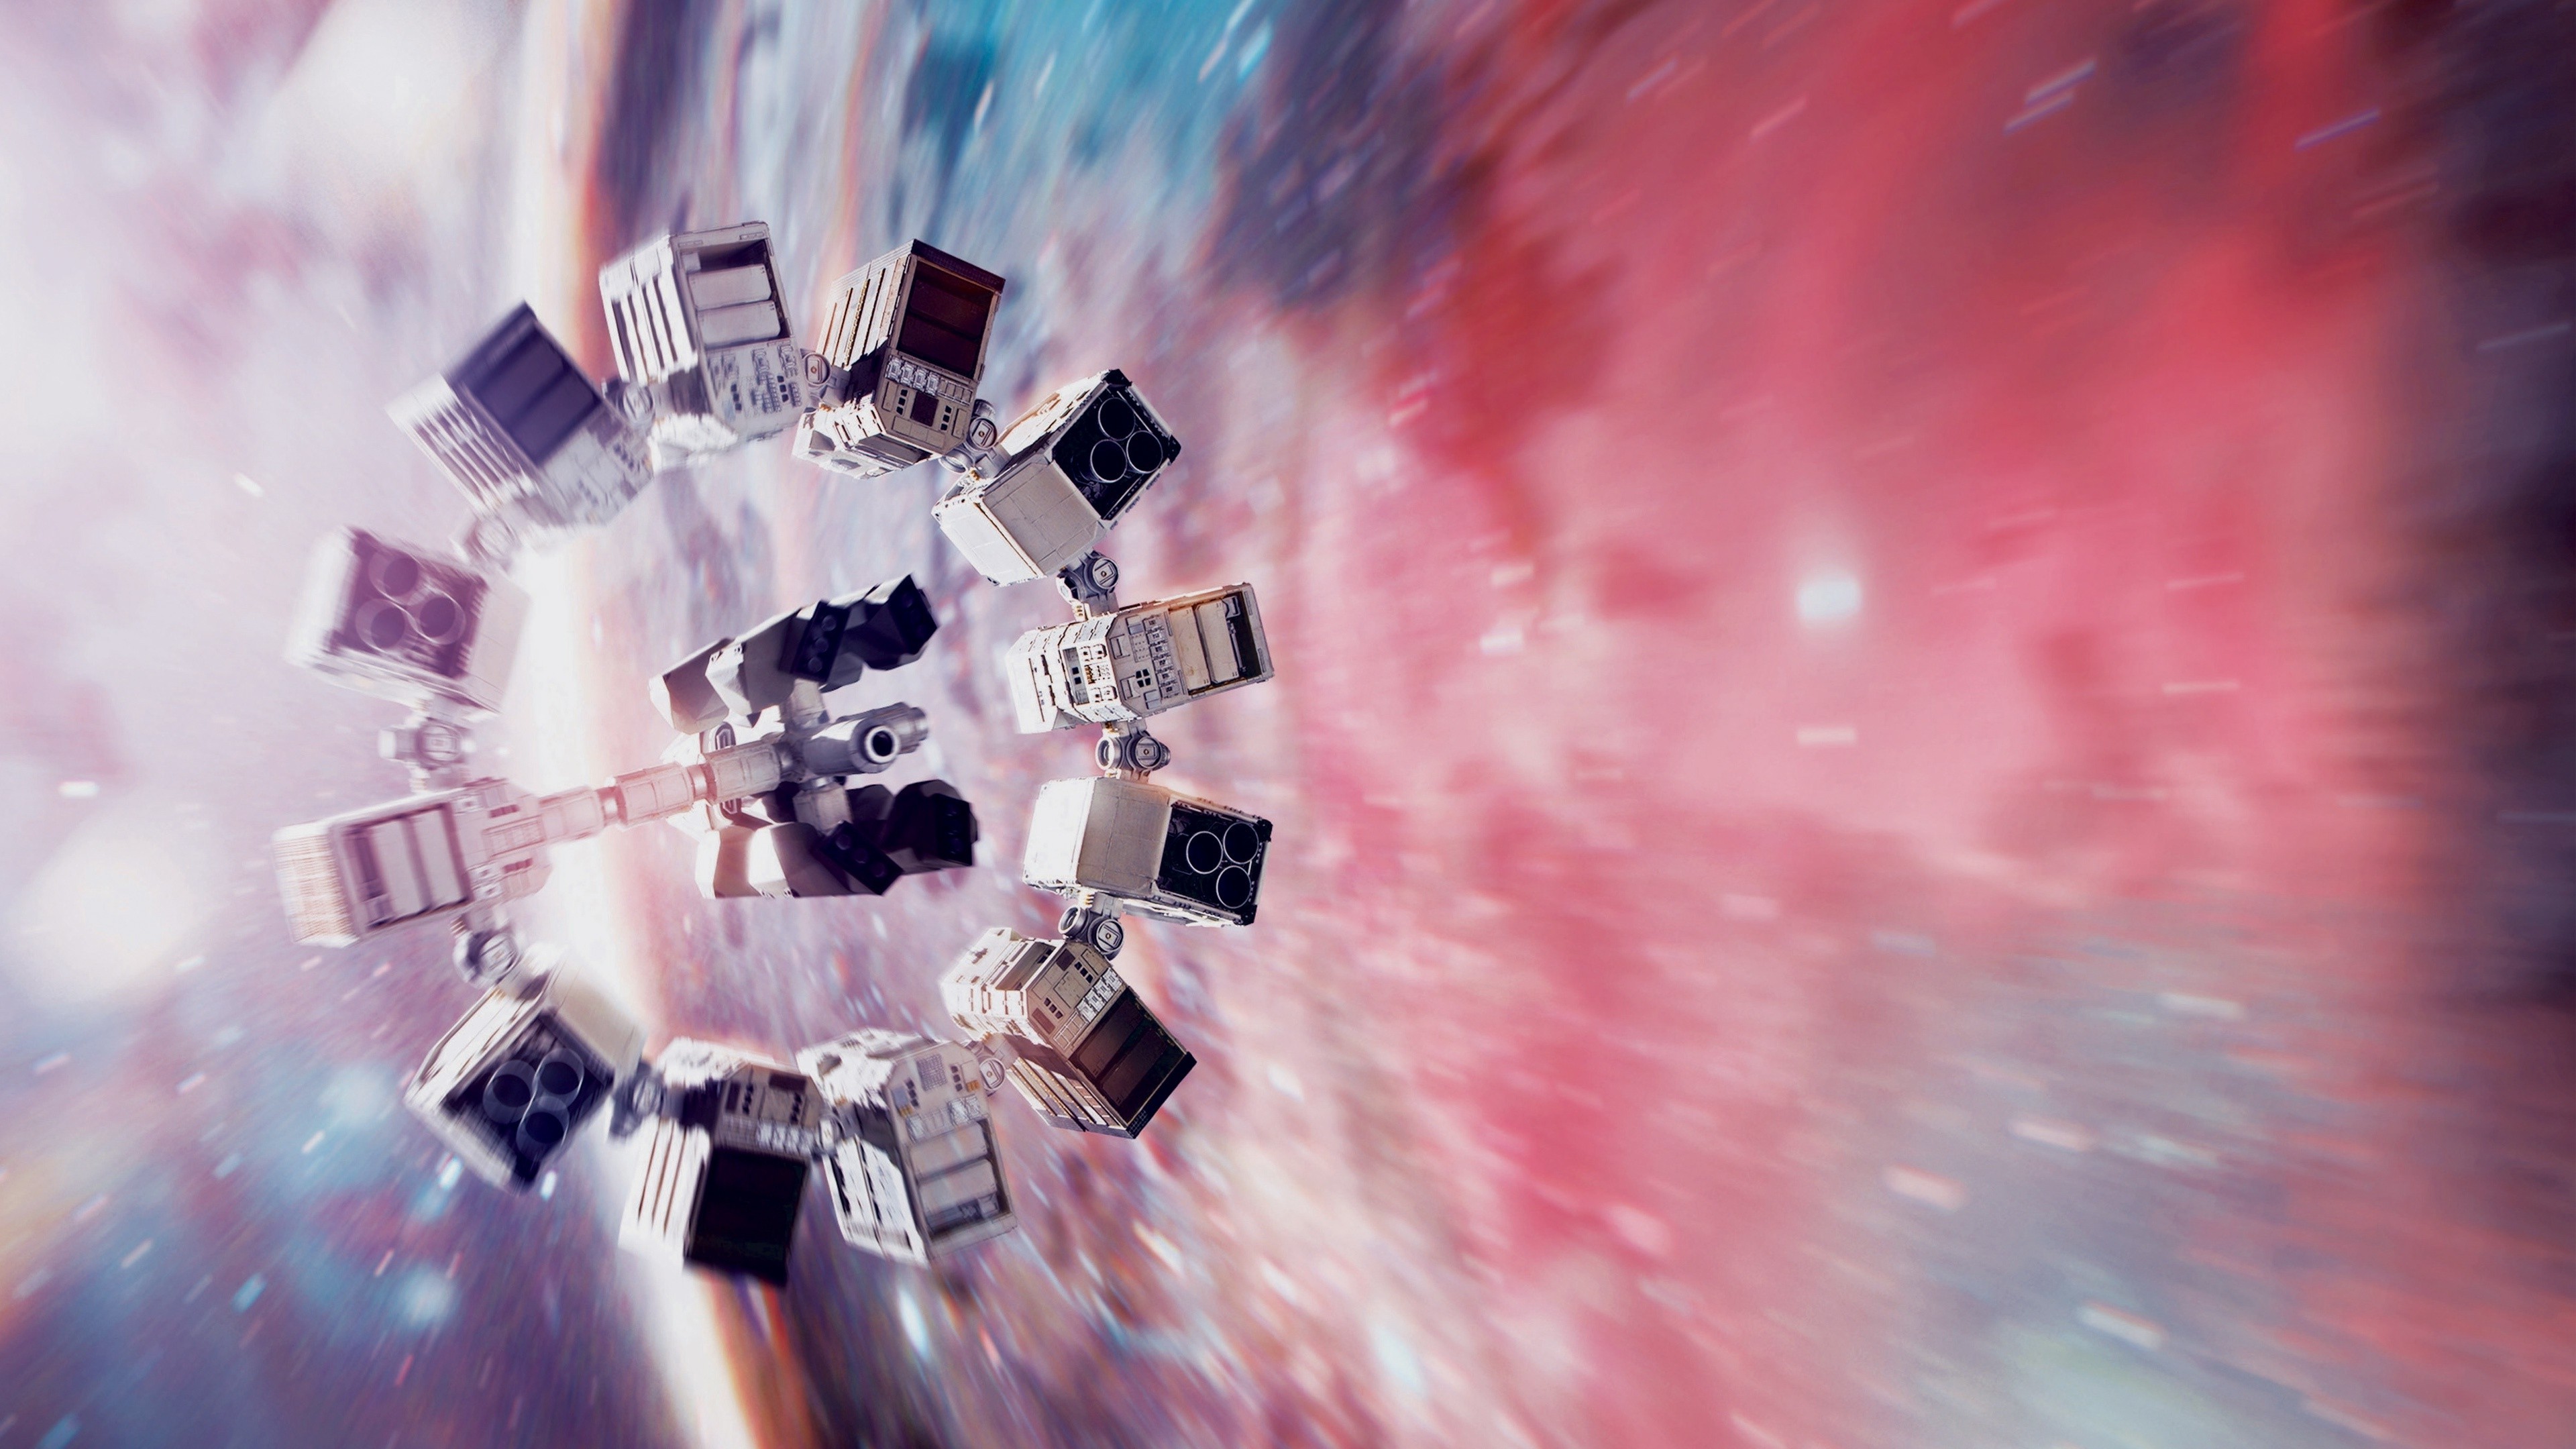 space, Interstellar (movie) Wallpaper